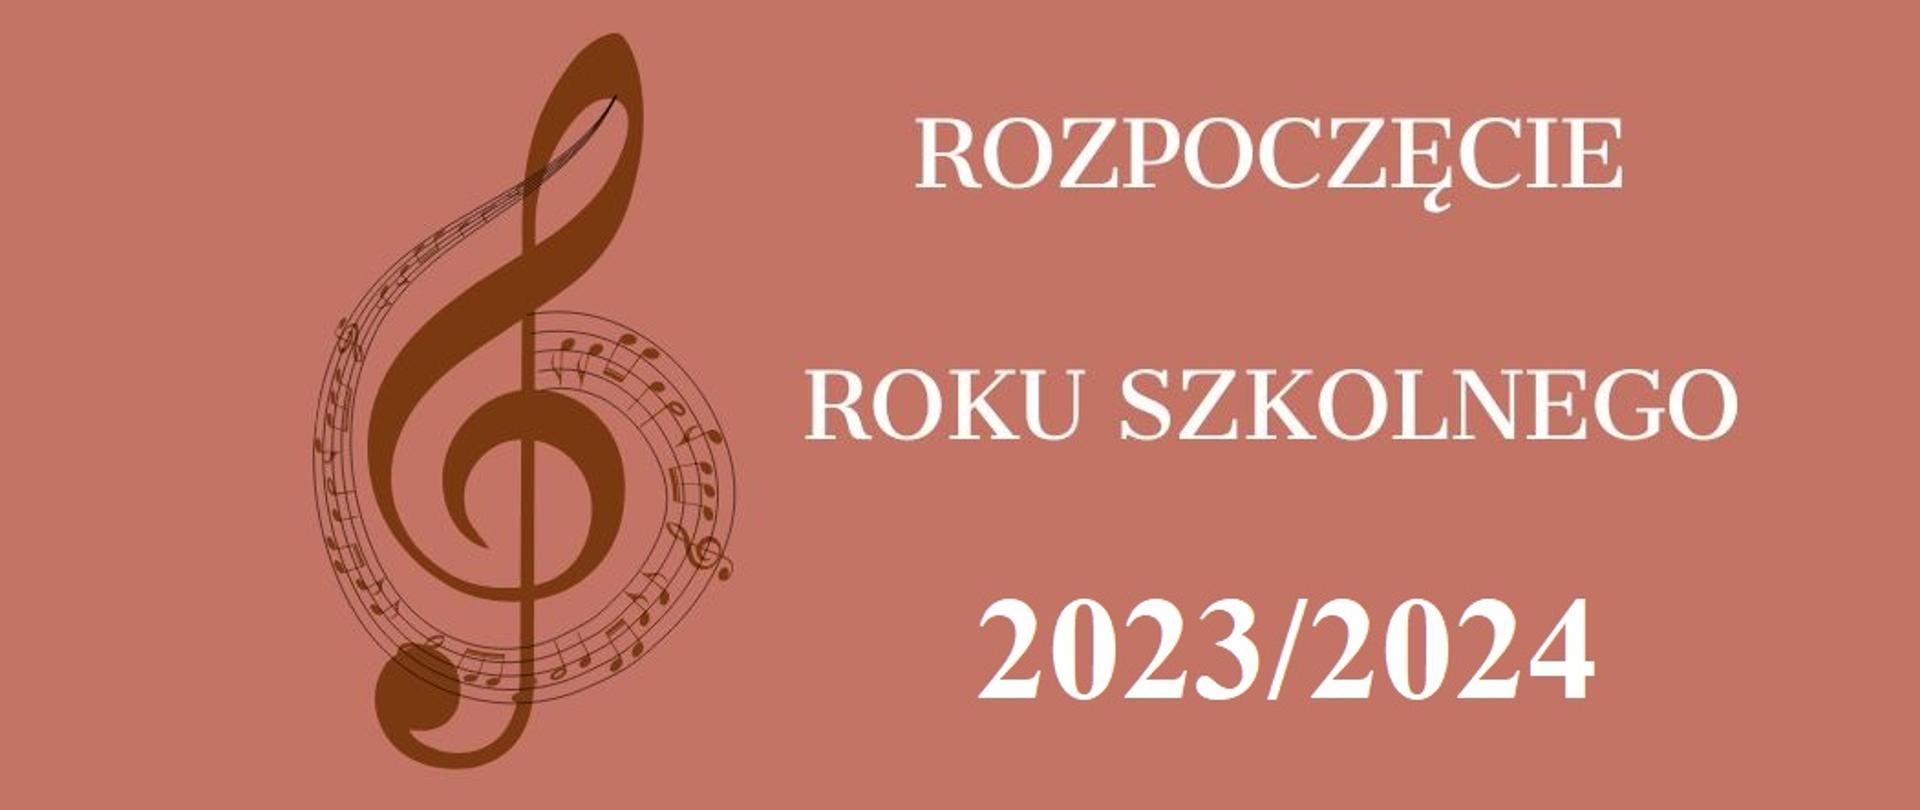 NA brązowym tle ozdobny klucz wiolinowy oraz napis ROZPOCZĘCIE ROKU SZKOLNEGO 2023/2024